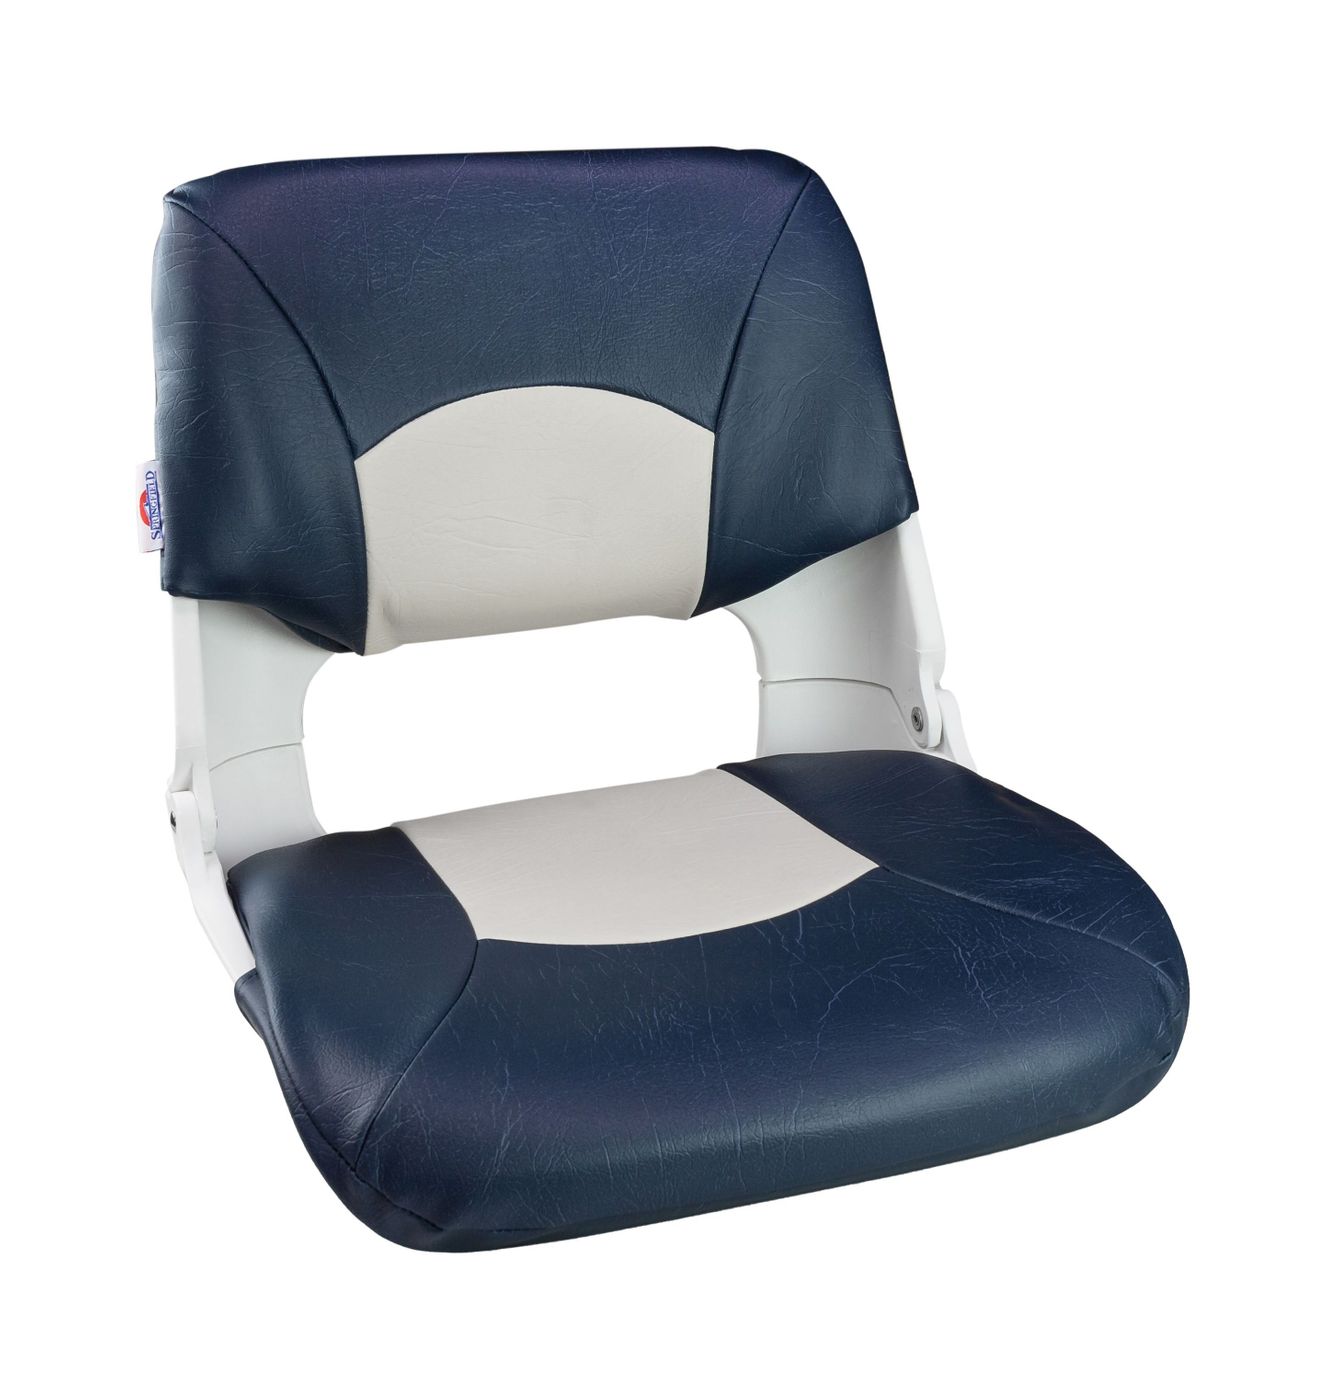 Кресло складное мягкое SKIPPER, цвет синий/белый 1061016 кресло шезлонг складное со съемным матрасом и декоративной подушкой подножка haushalt hhk7 bl синий